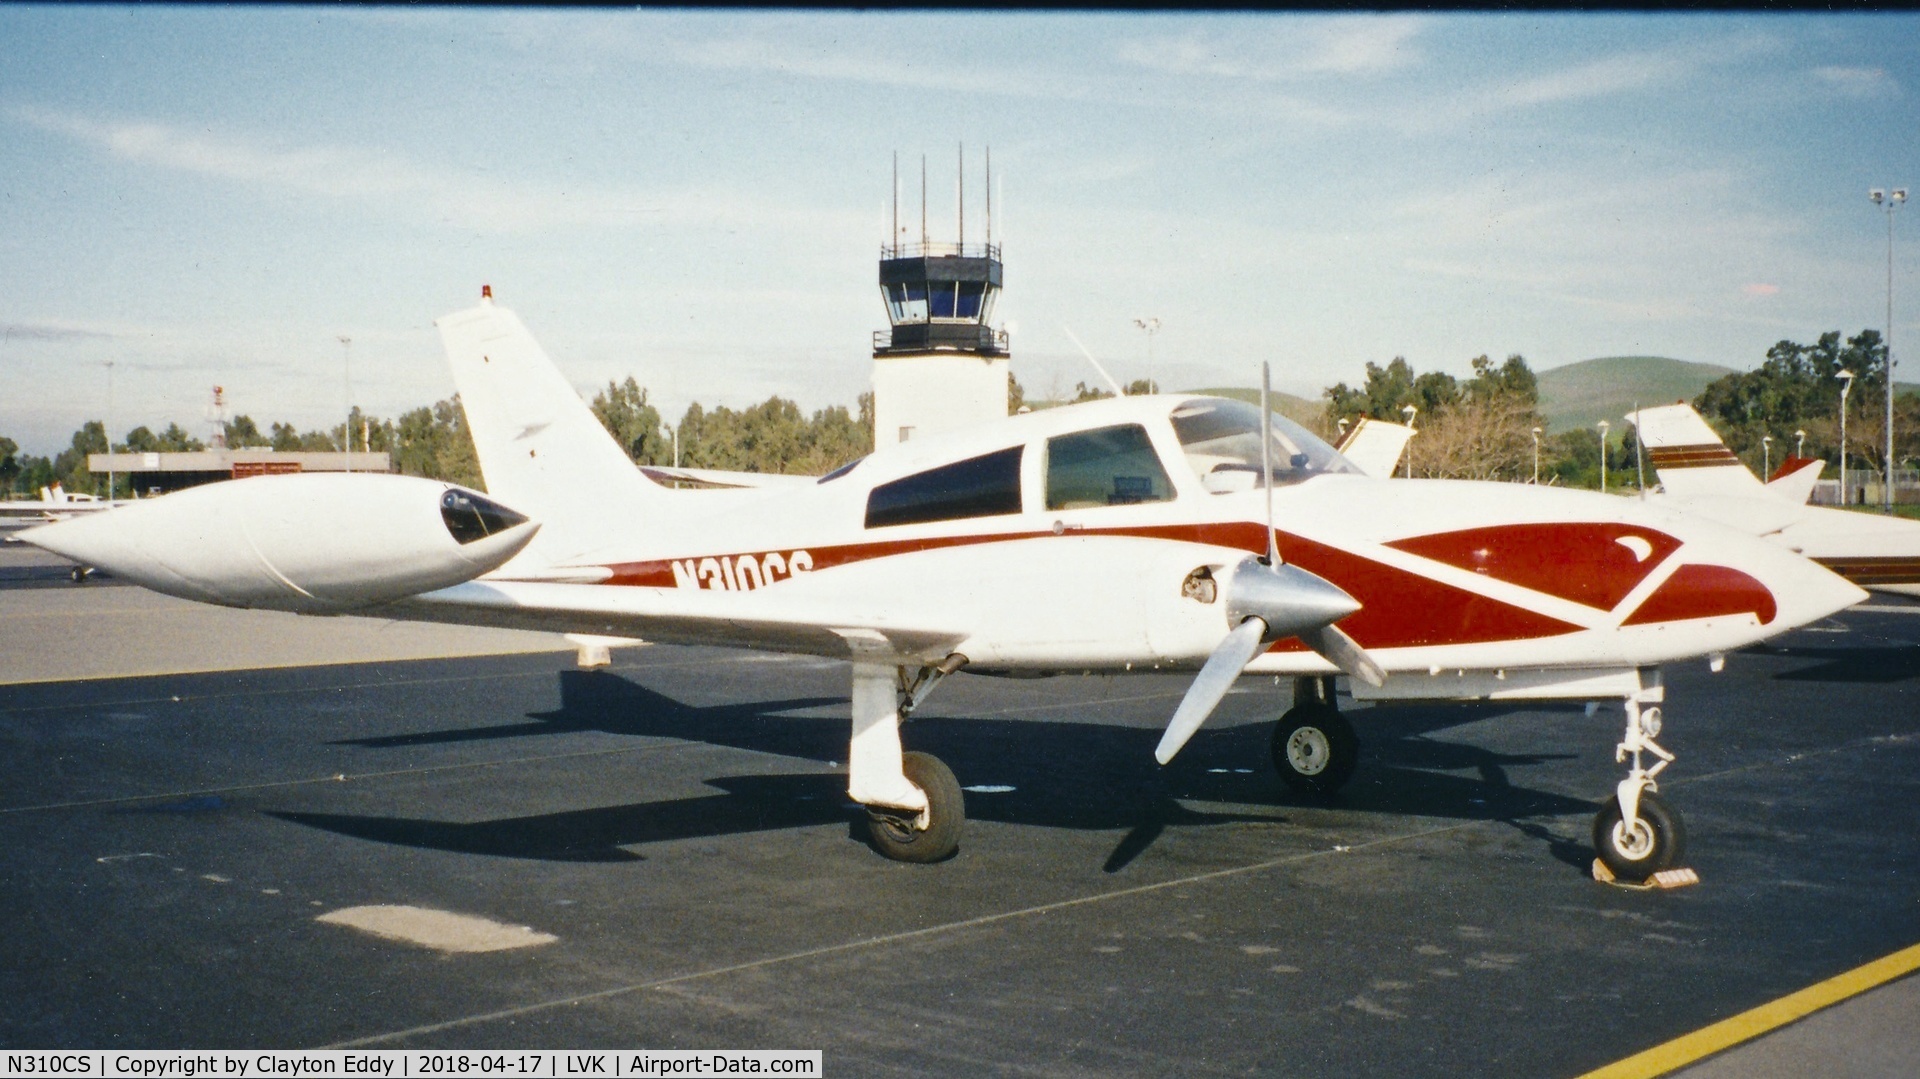 N310CS, 1975 Cessna 310R C/N 310R0239, Livermore Airport California 1990's.